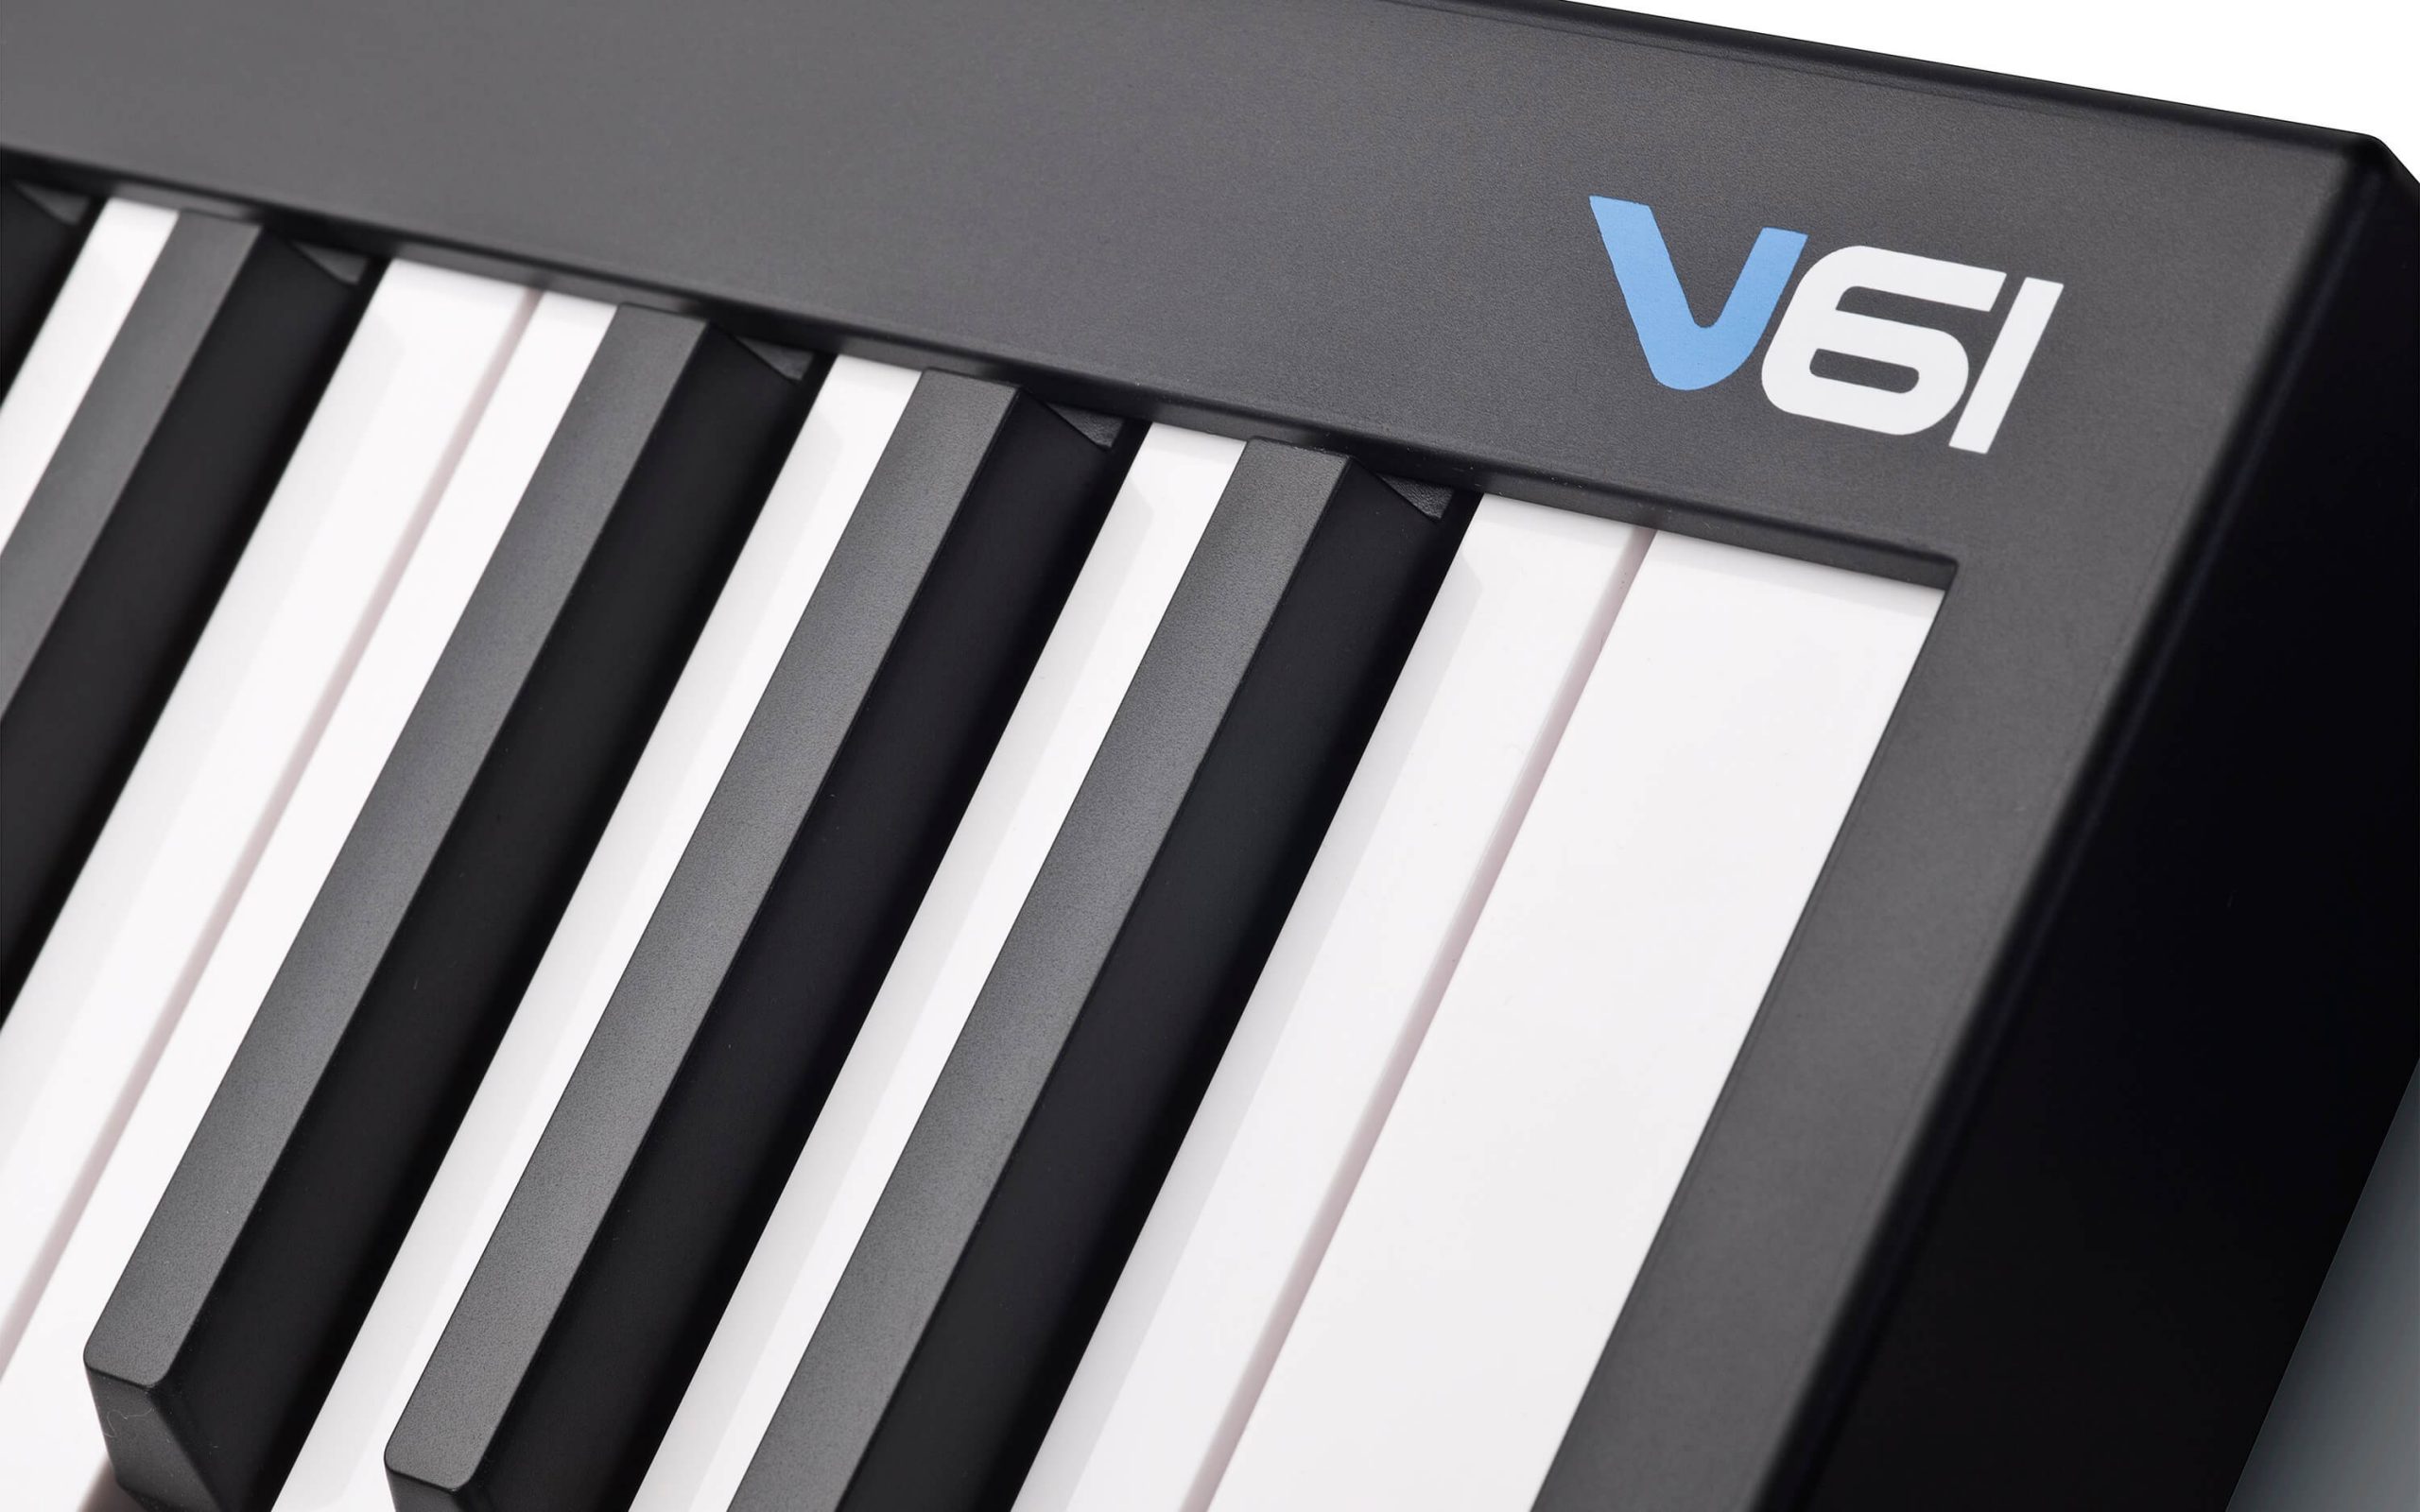 Alesis-V61-Keyboard-Controller